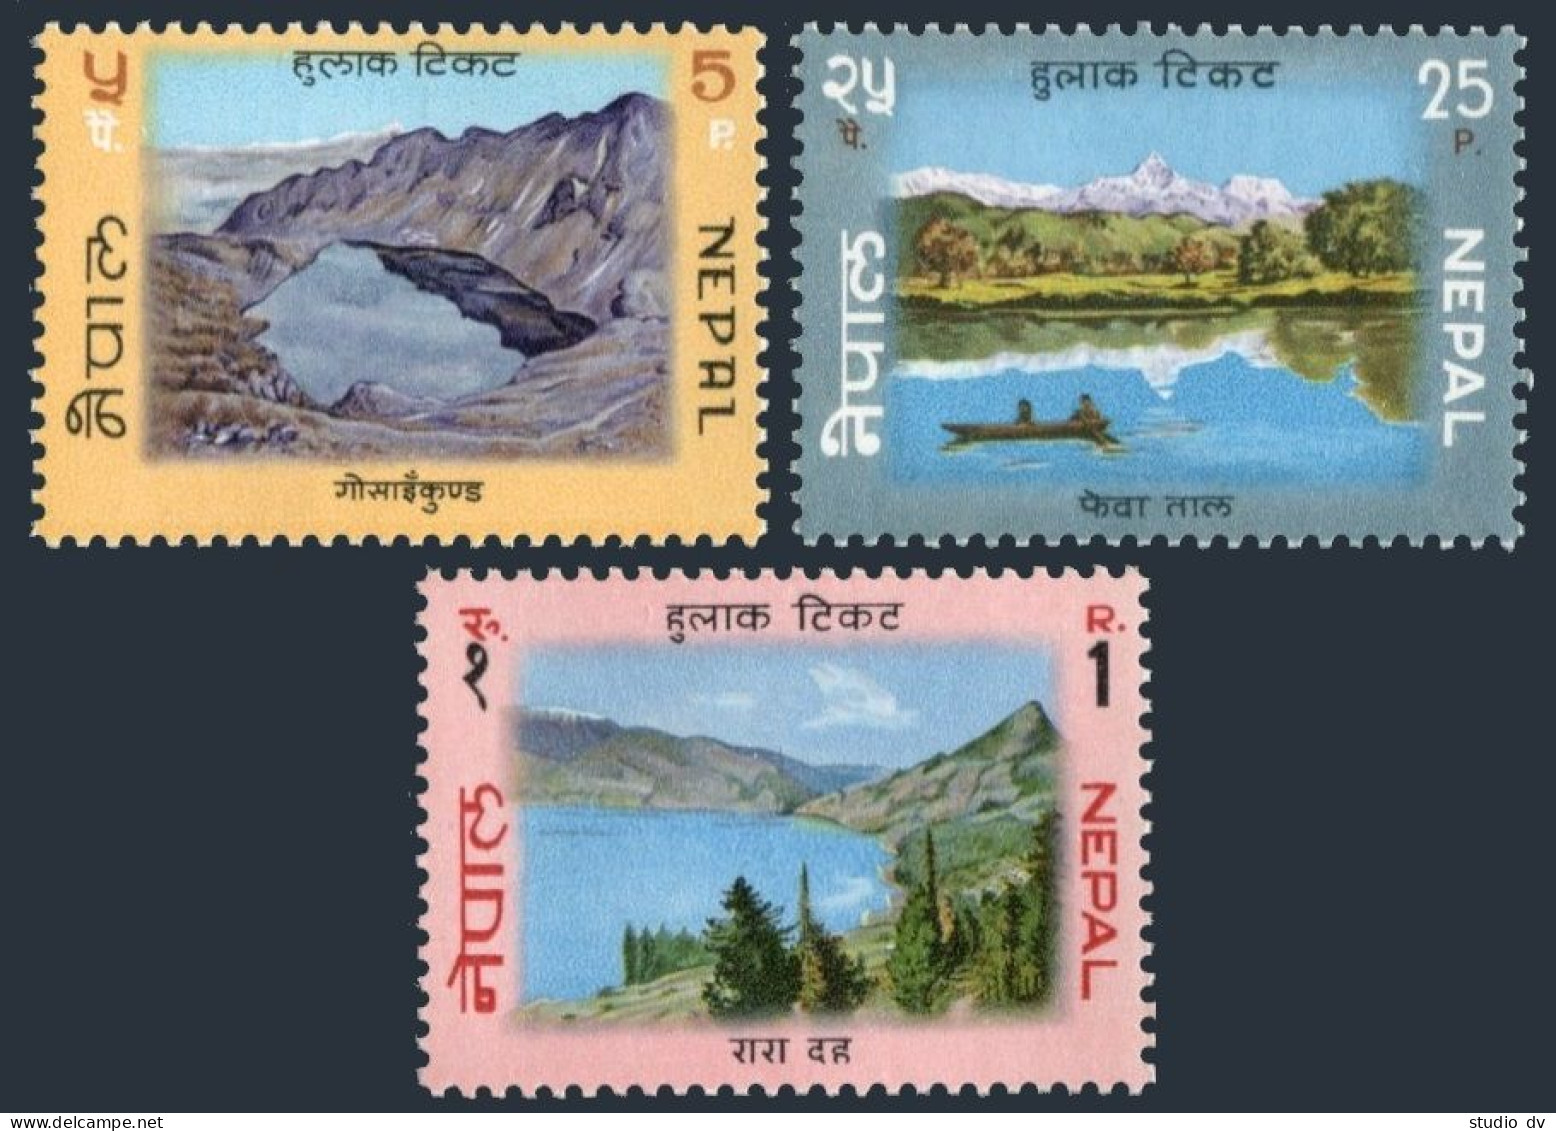 Nepal 234-236, MNH. Michel 249-251. Lakes 1970. Gosainkund,Phewa Tal, Rara Daha. - Nepal